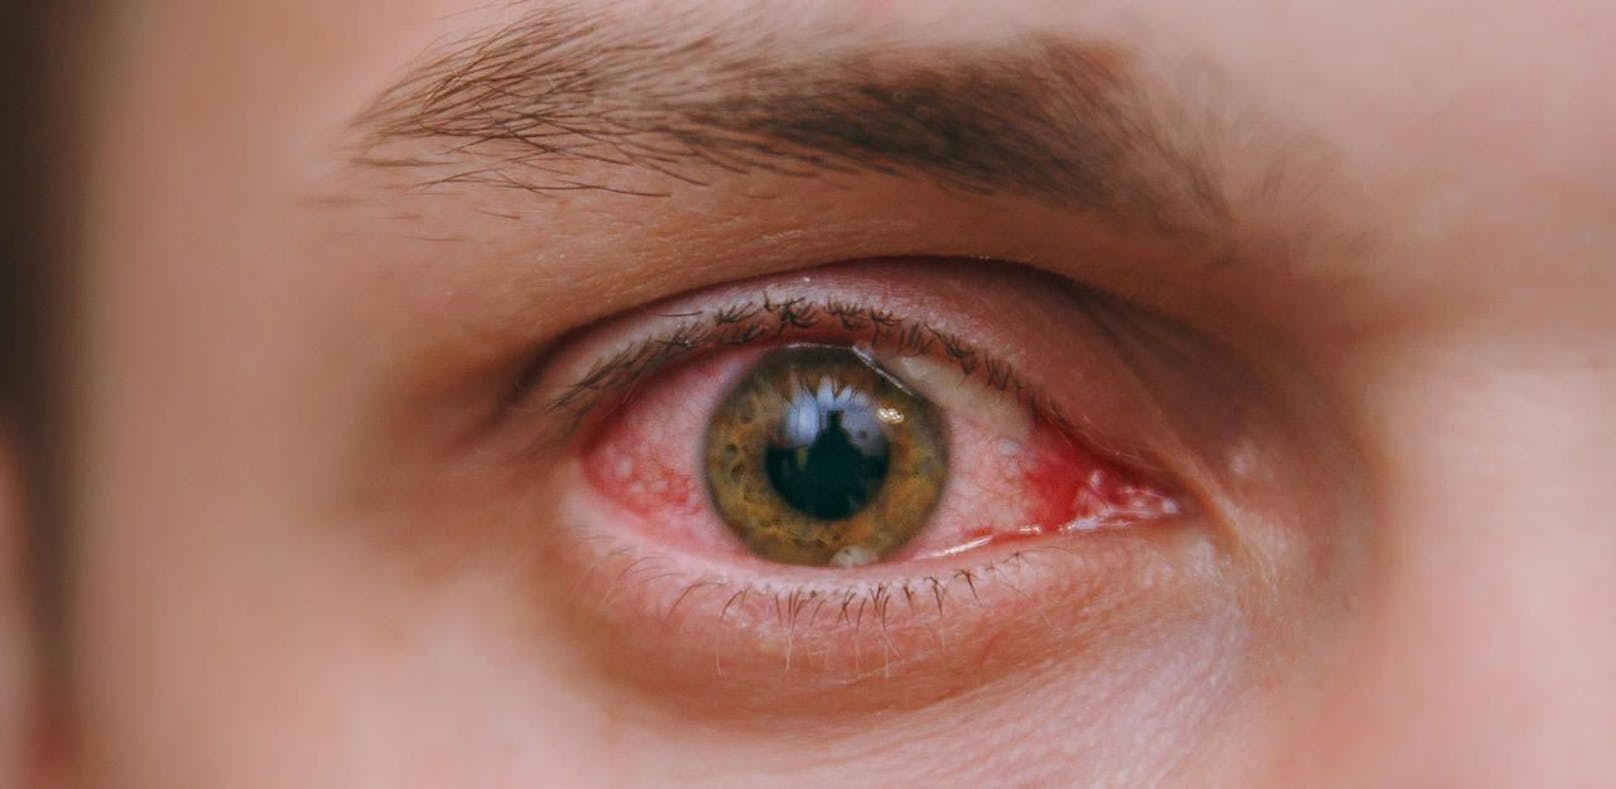 Bei der Augengrippe handelt es sich um eine Bindehautentzündung.